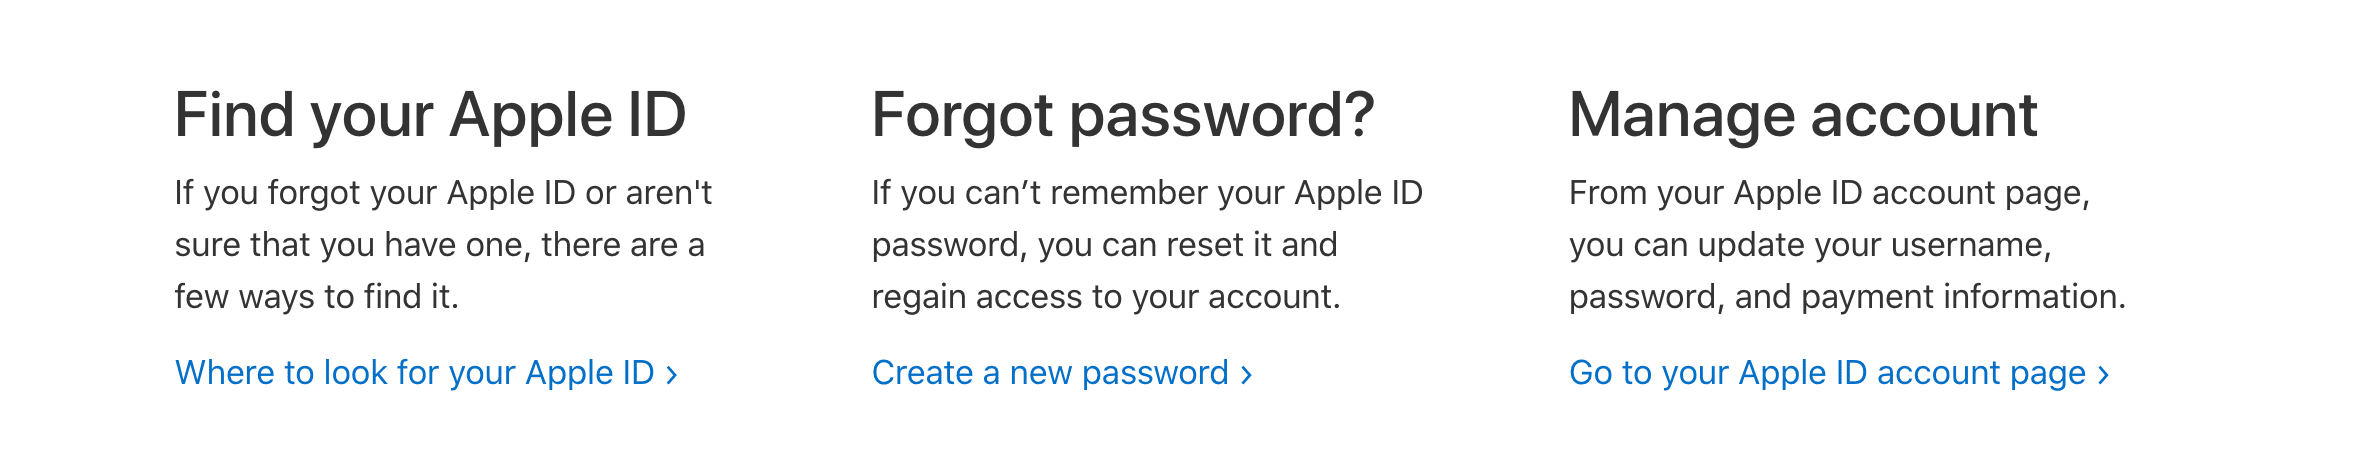 Schermafbeelding die laat zien hoe u toegang krijgt tot de Apple ID-accountpagina